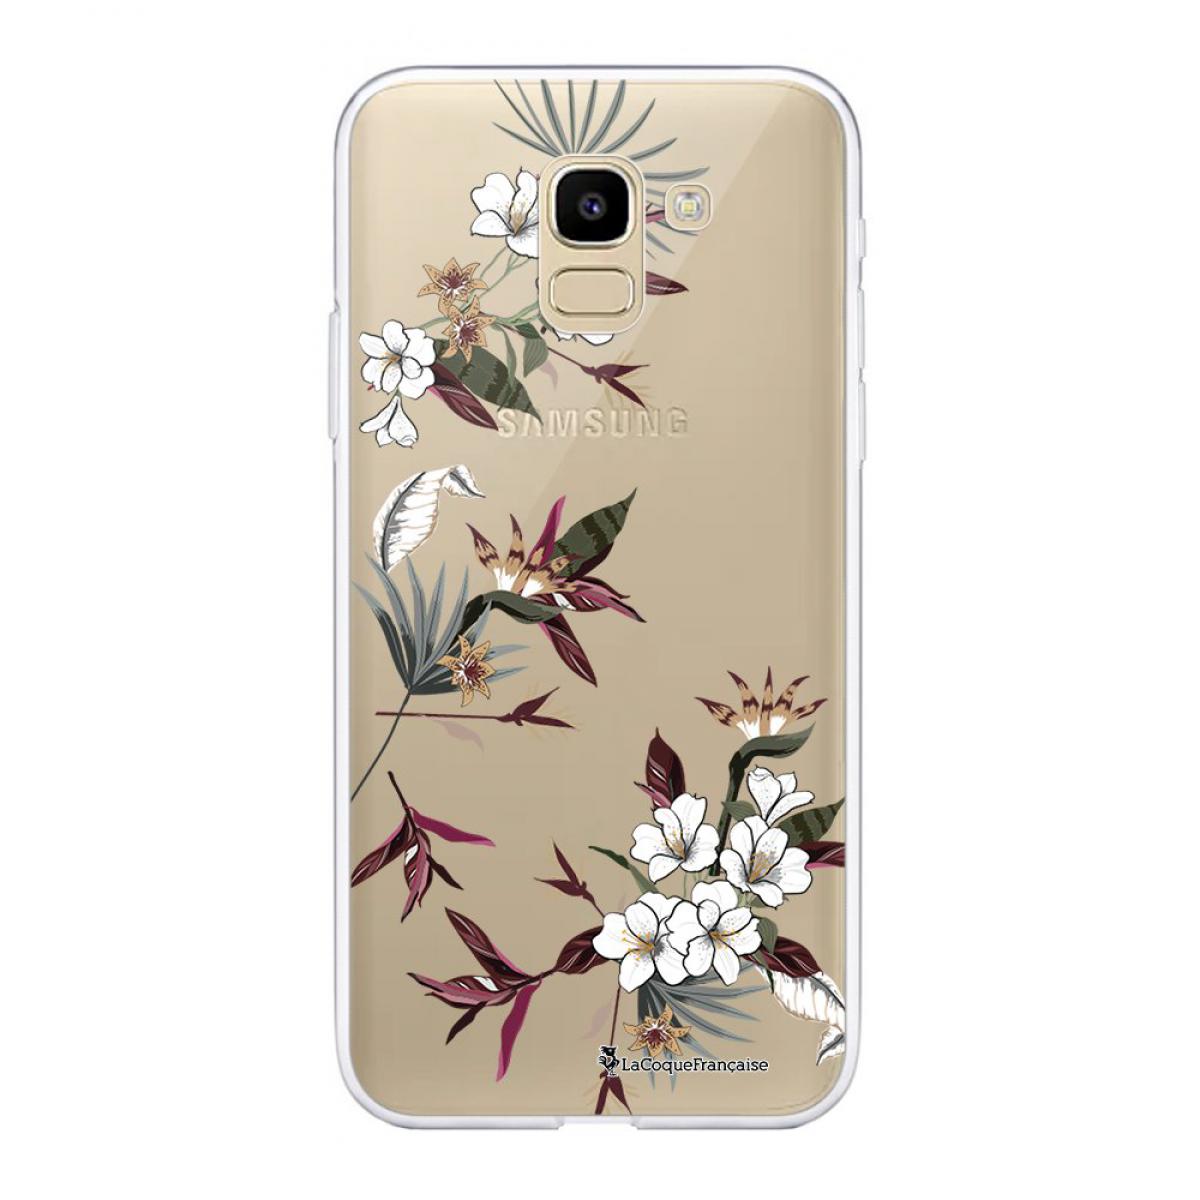 La Coque Francaise - Coque Samsung Galaxy J6 2018 souple transparente Fleurs Sauvages Motif Ecriture Tendance La Coque Francaise - Coque, étui smartphone